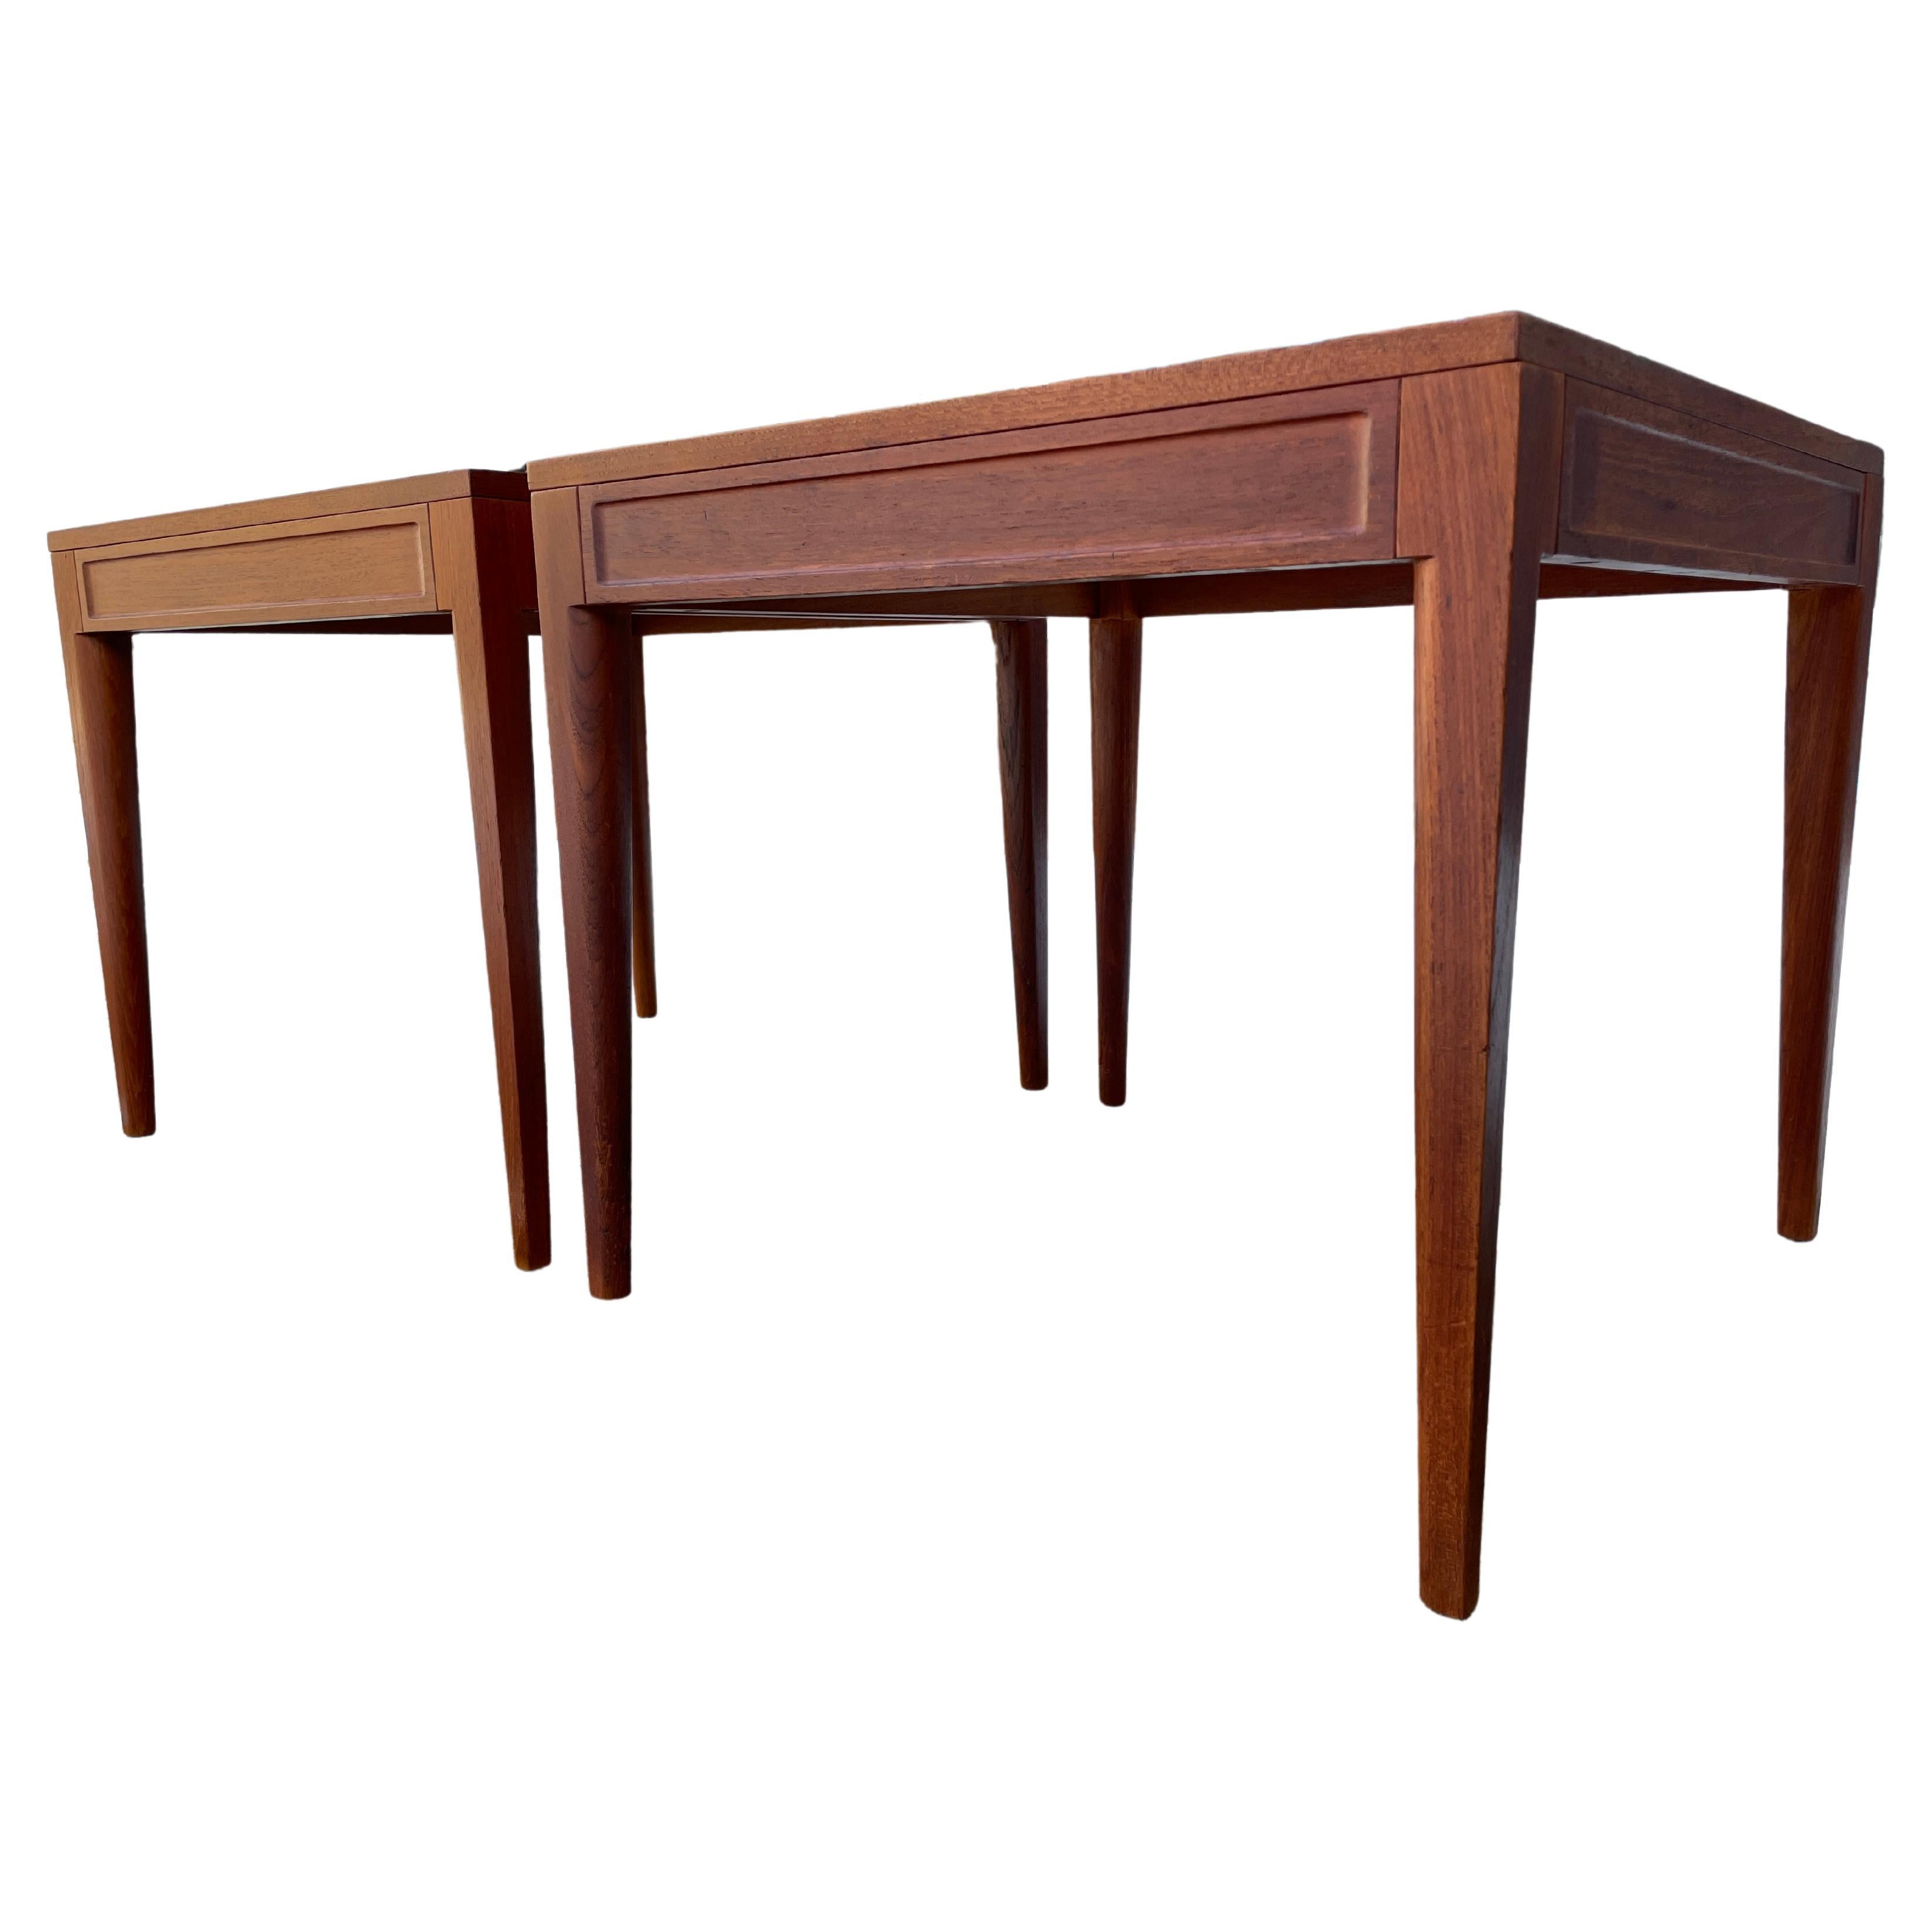 Elegant Pair of Mid-Century Modern Teak Side Tables or Nightstands